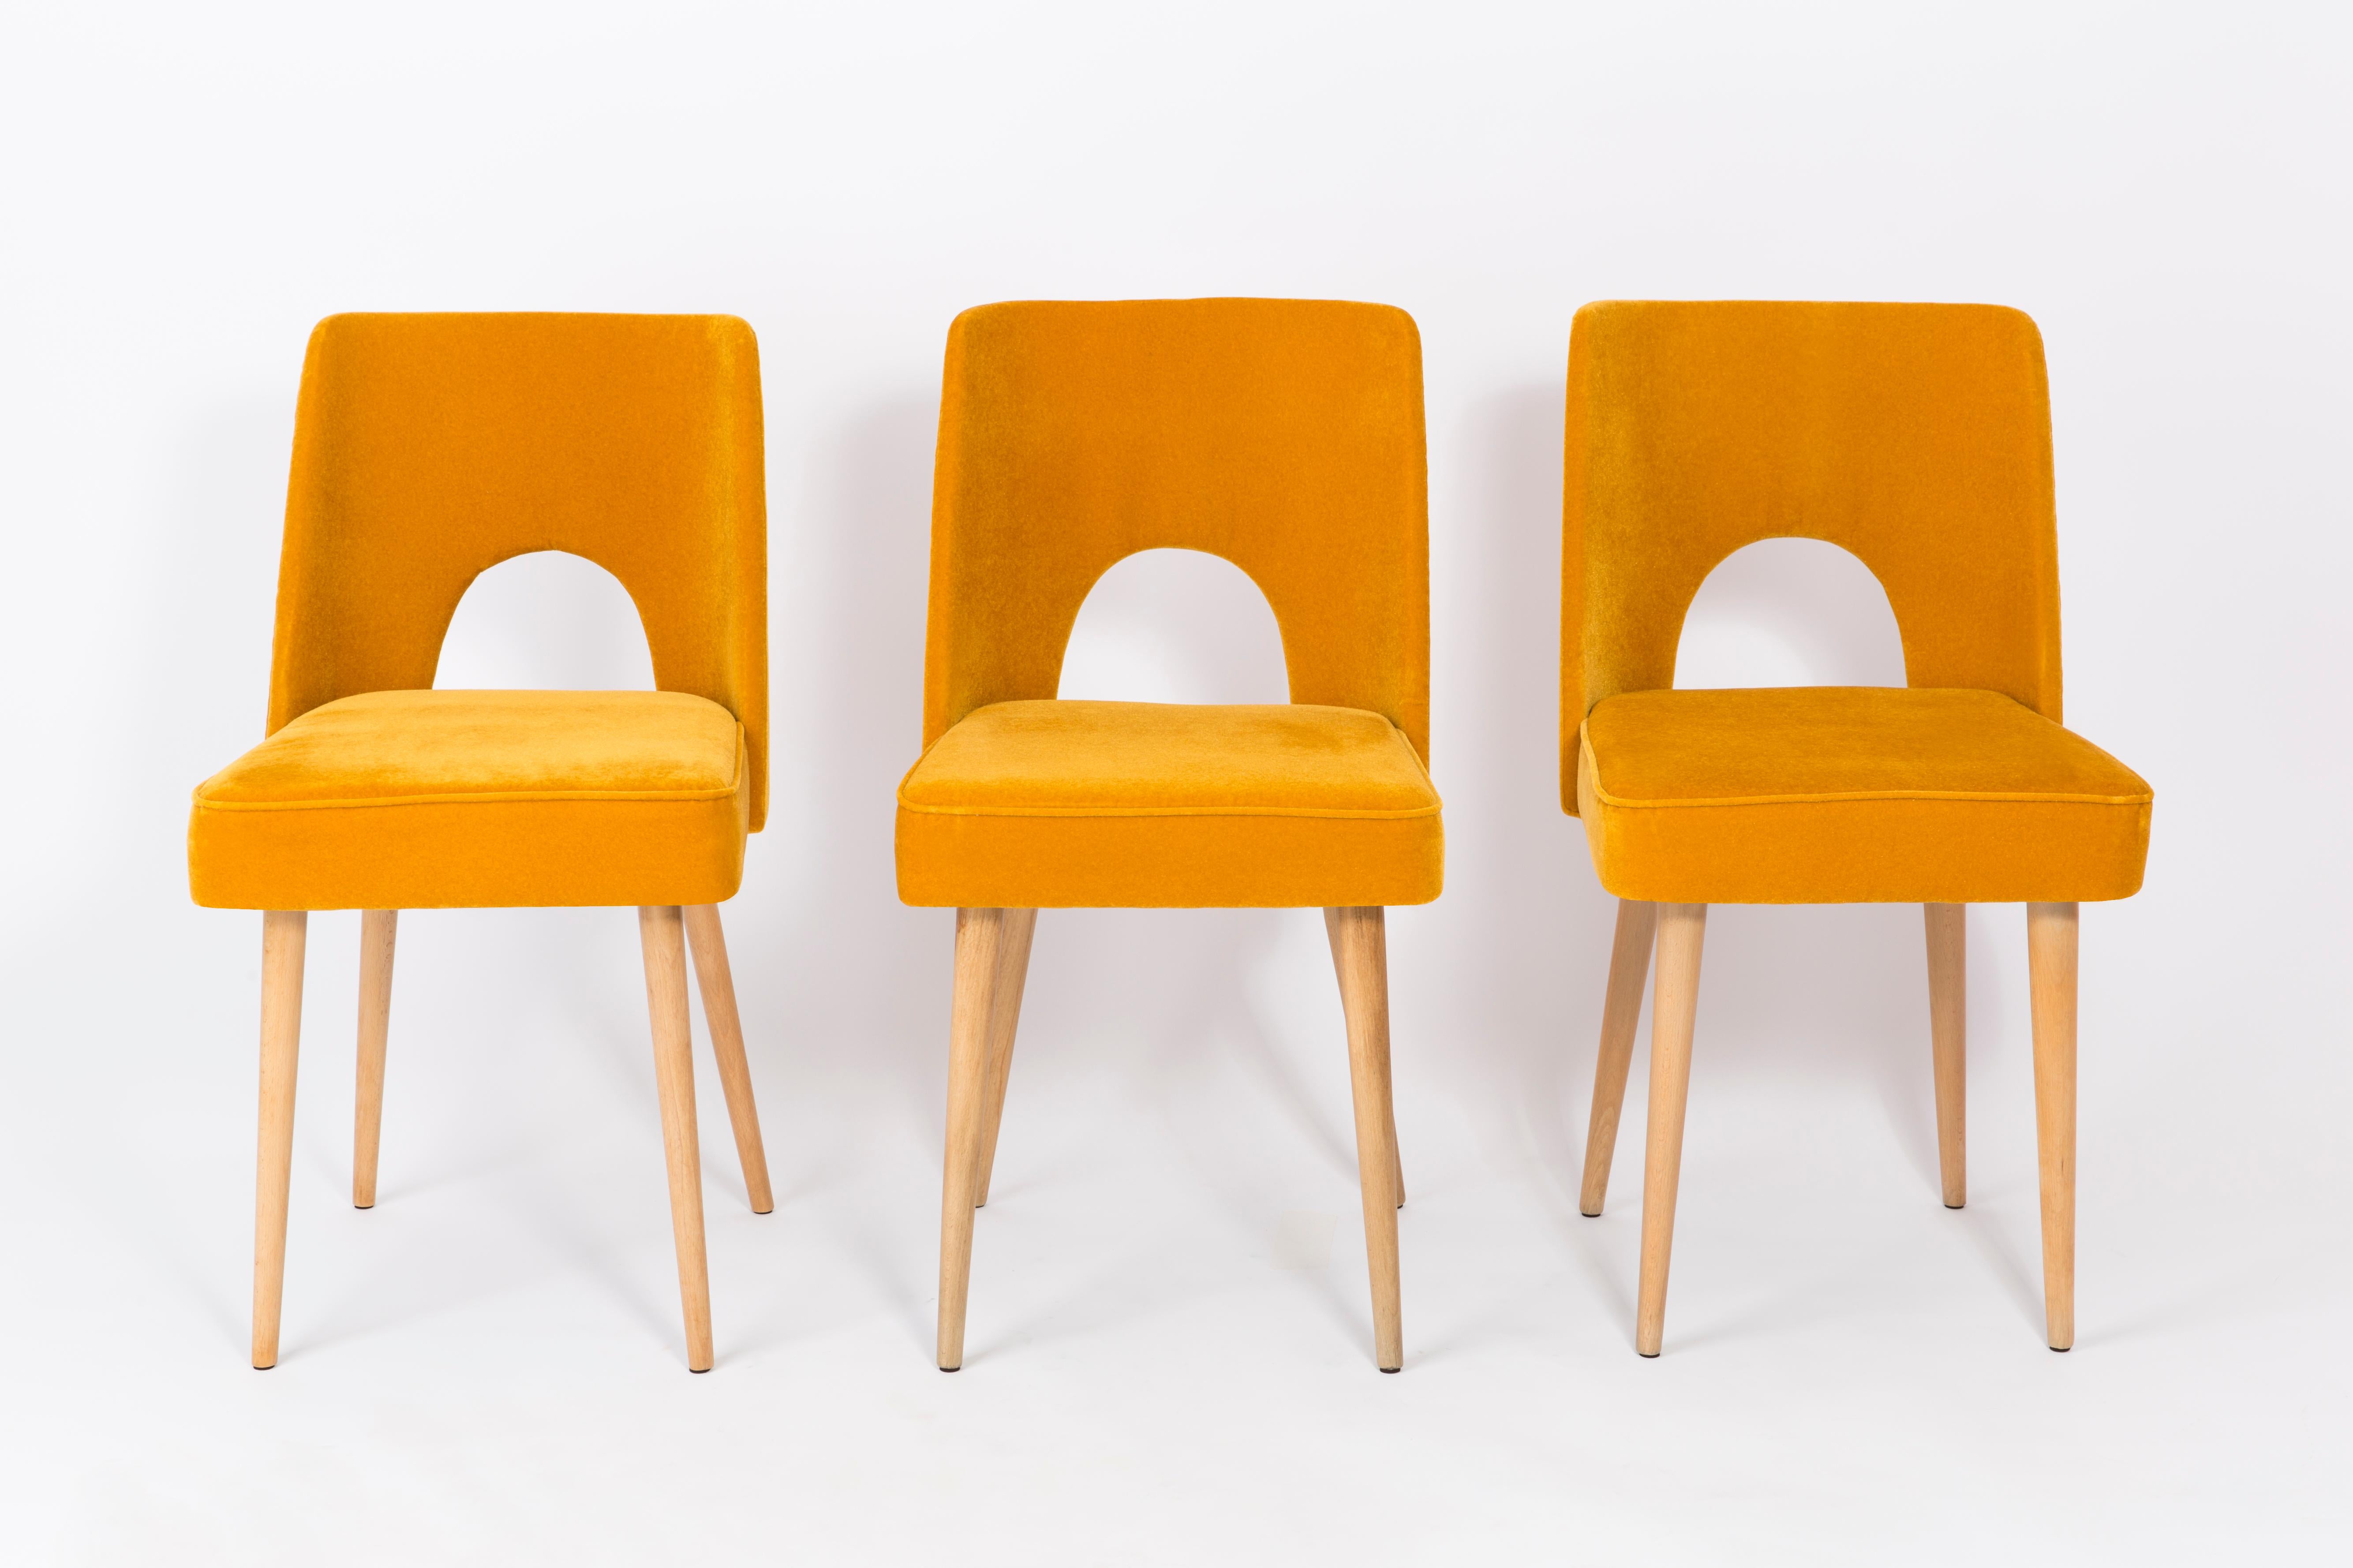 Quatre belles chaises de type 1020, familièrement appelées 